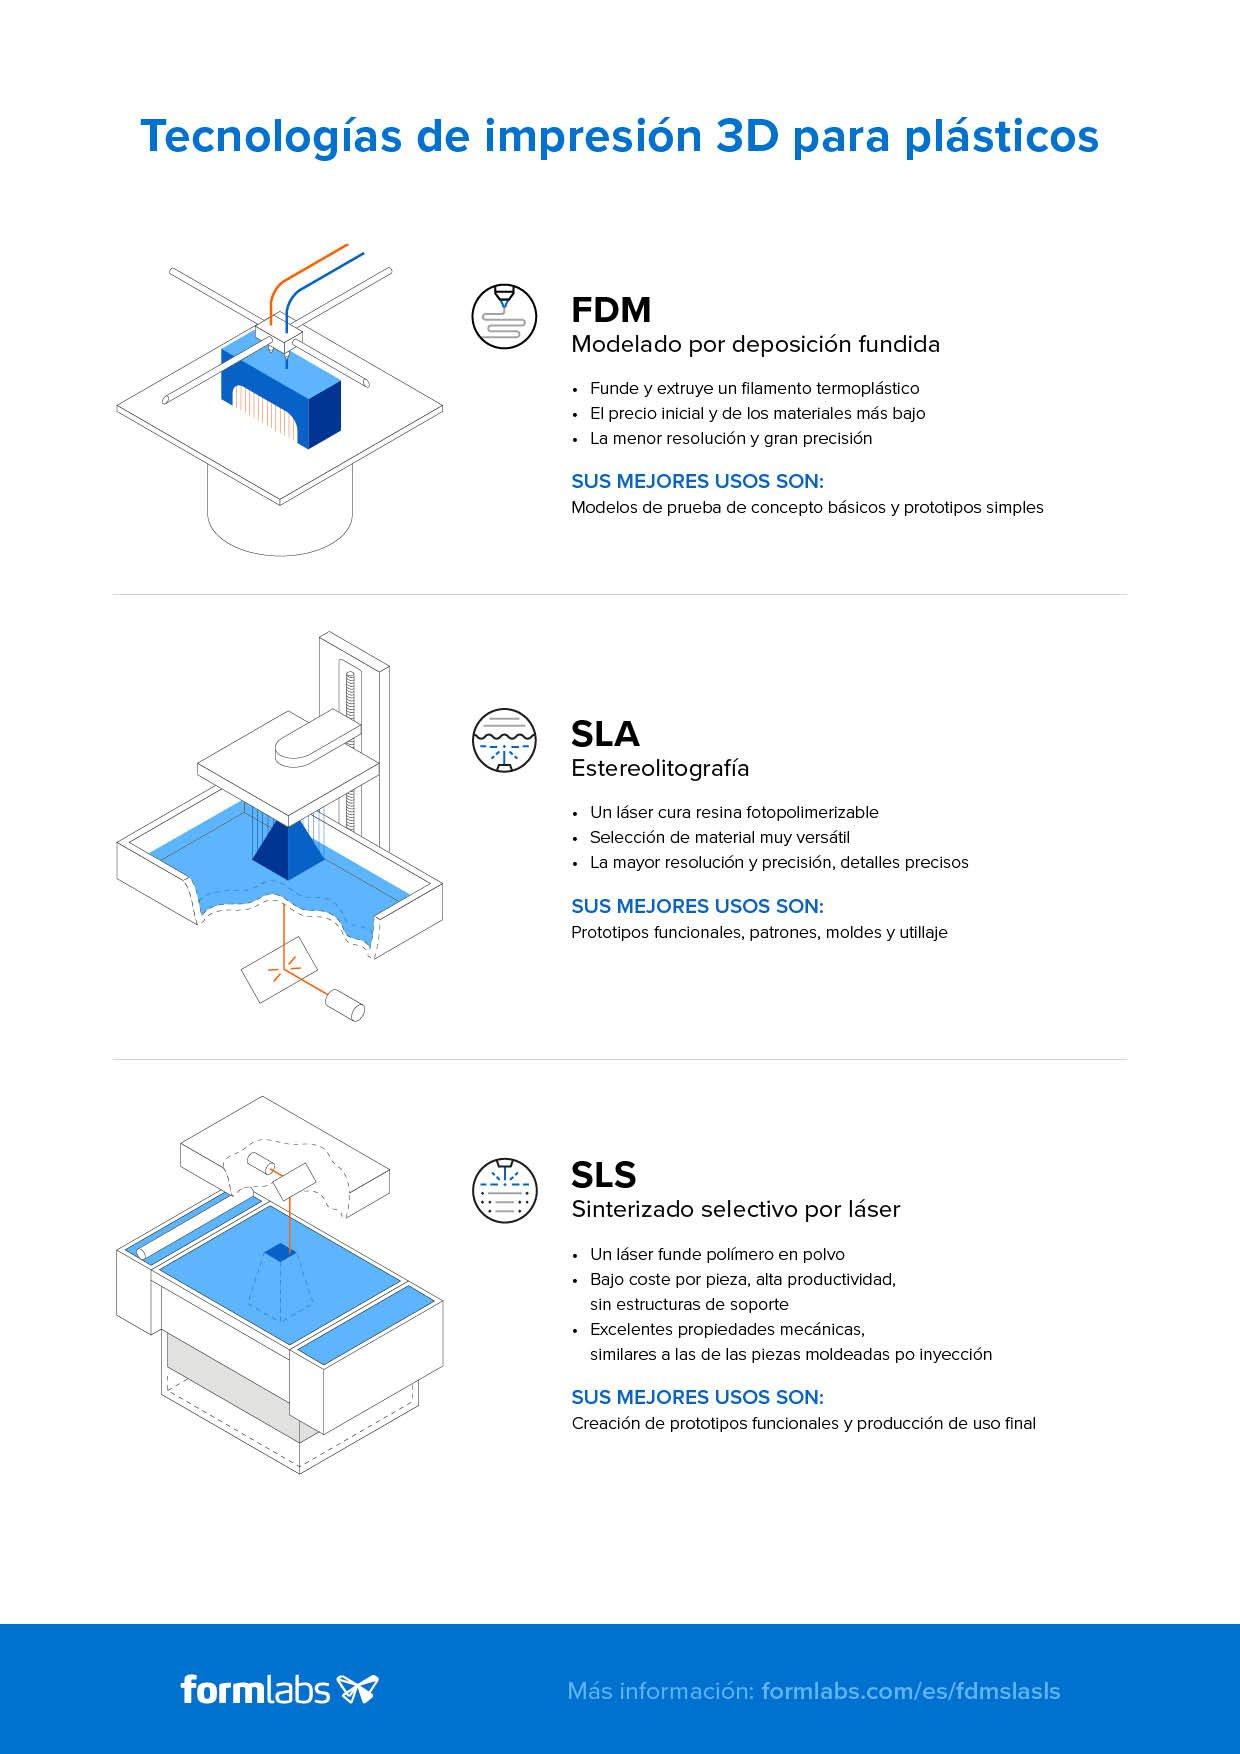 Infografía de comparación de tecnología de impresión 3D: FDM vs. SLA vs. SLS